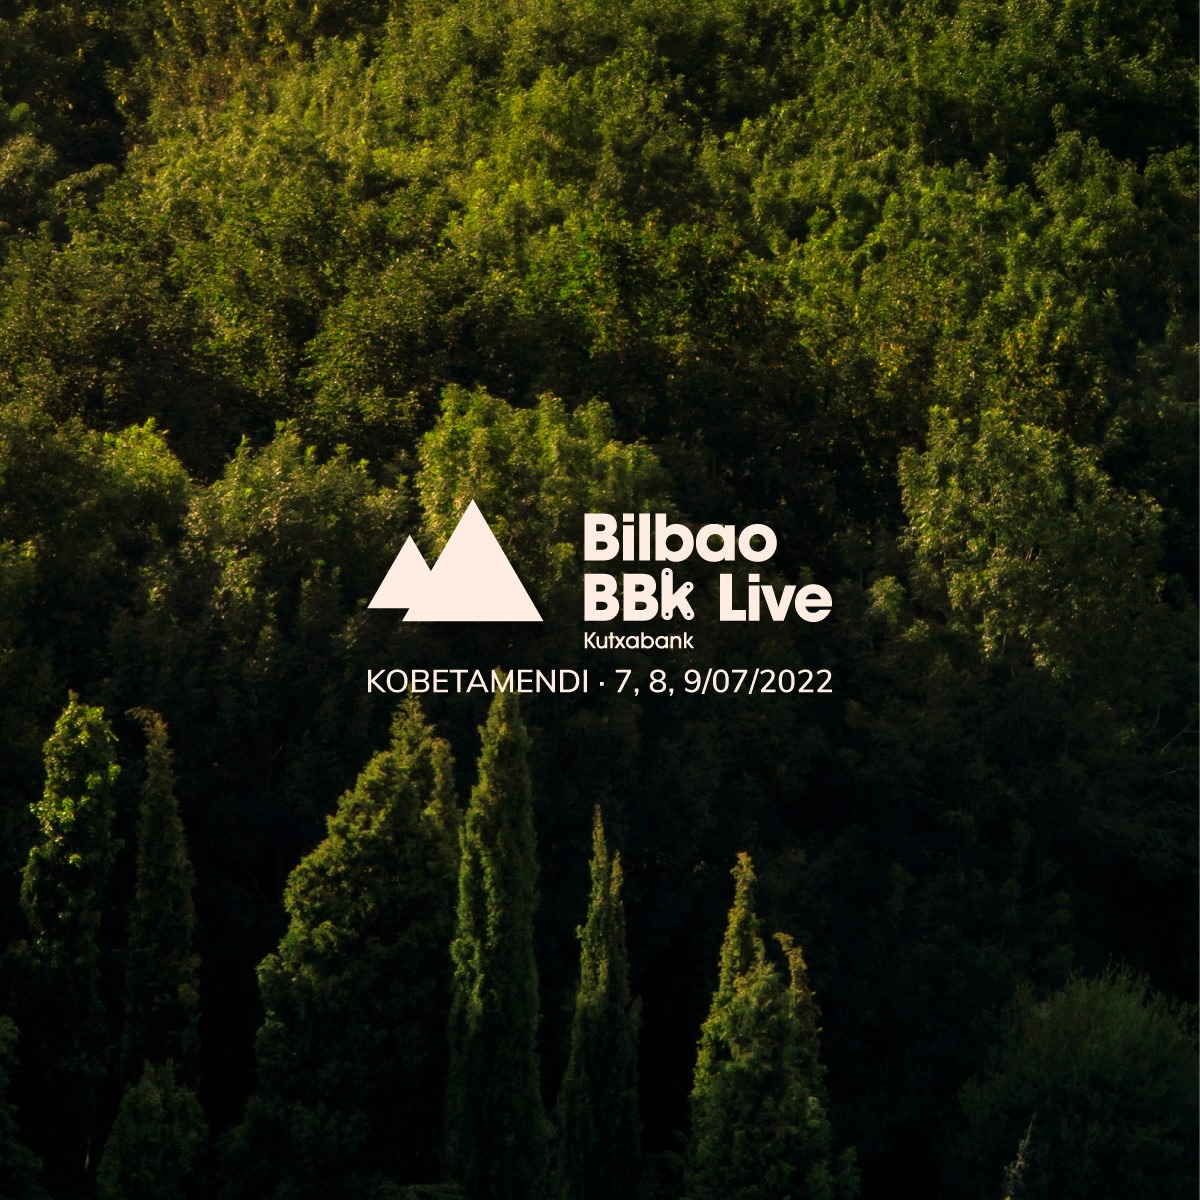 Bilbao BBK Live 2022, reconfirmaciones y fechas